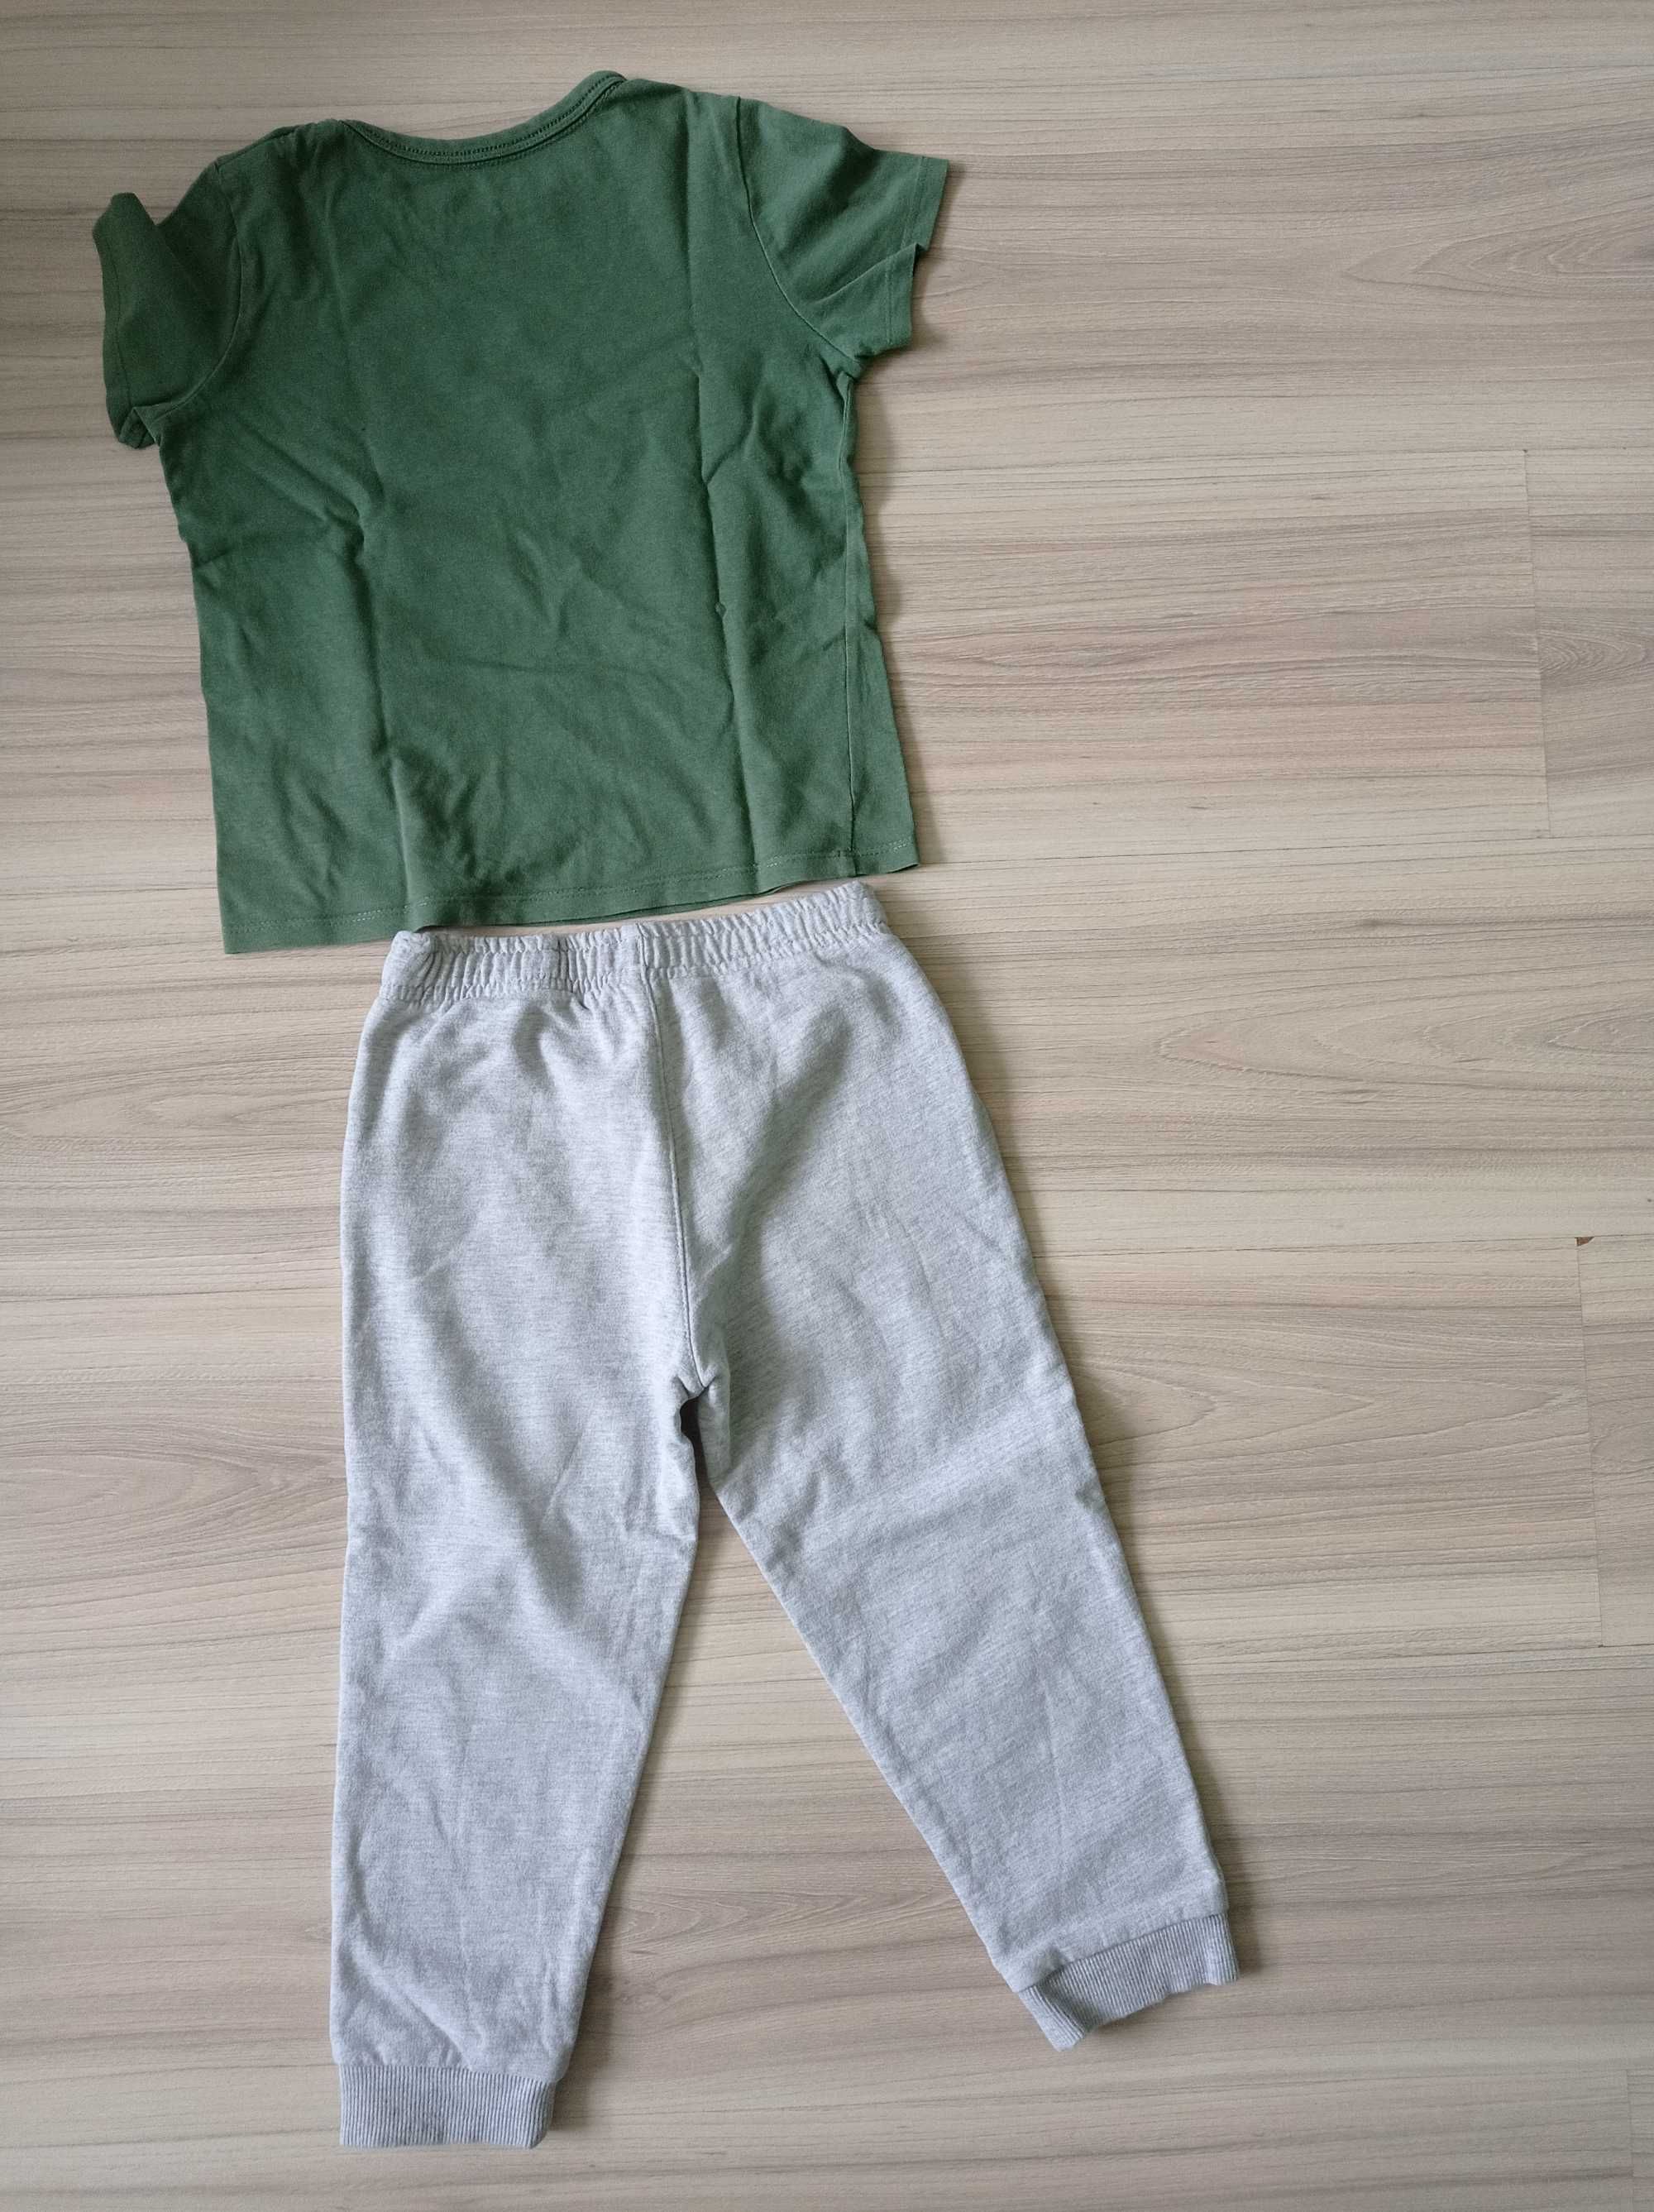 Komplet dla chłopca kameleon: spodnie + bluzka, Pepco